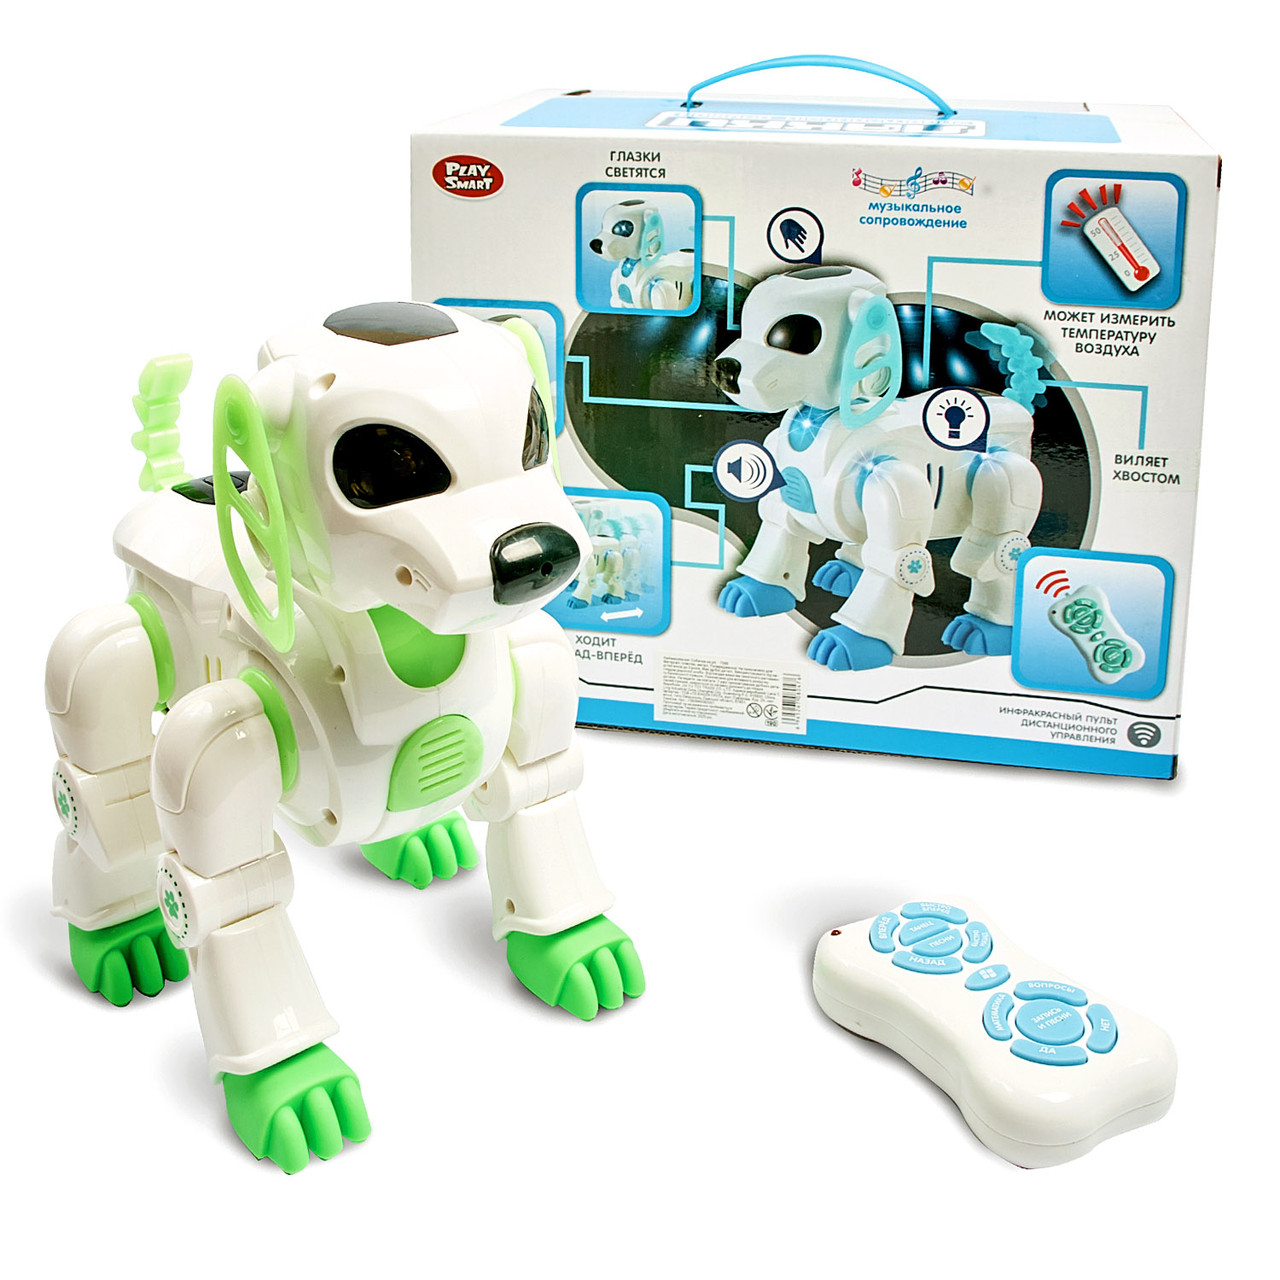 Іграшка розумний вихованець Лаккі - електронний дружок Розумний собака, інтерактивна іграшка для дитини